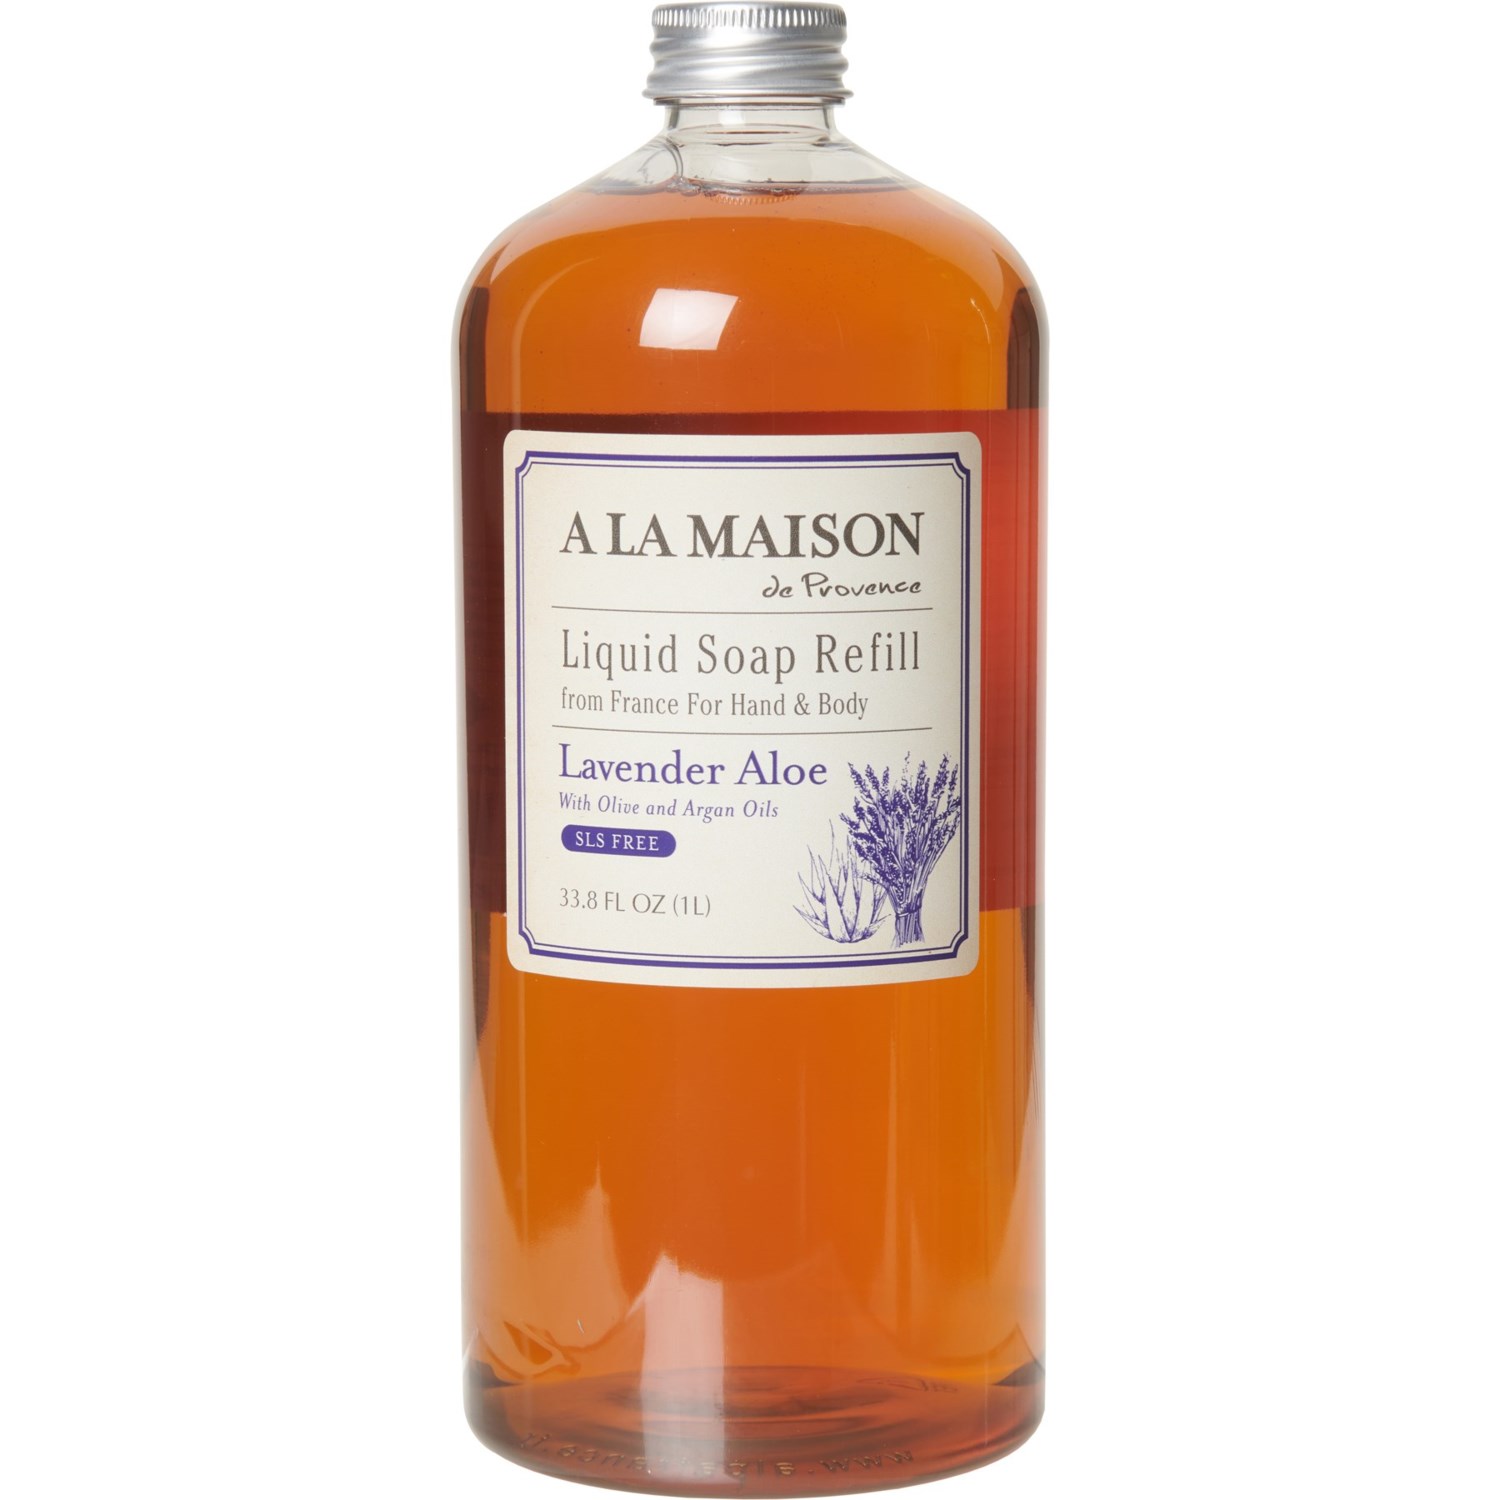 A La Maison Liquid Hand and Body Soap Refill - 33.8 oz.